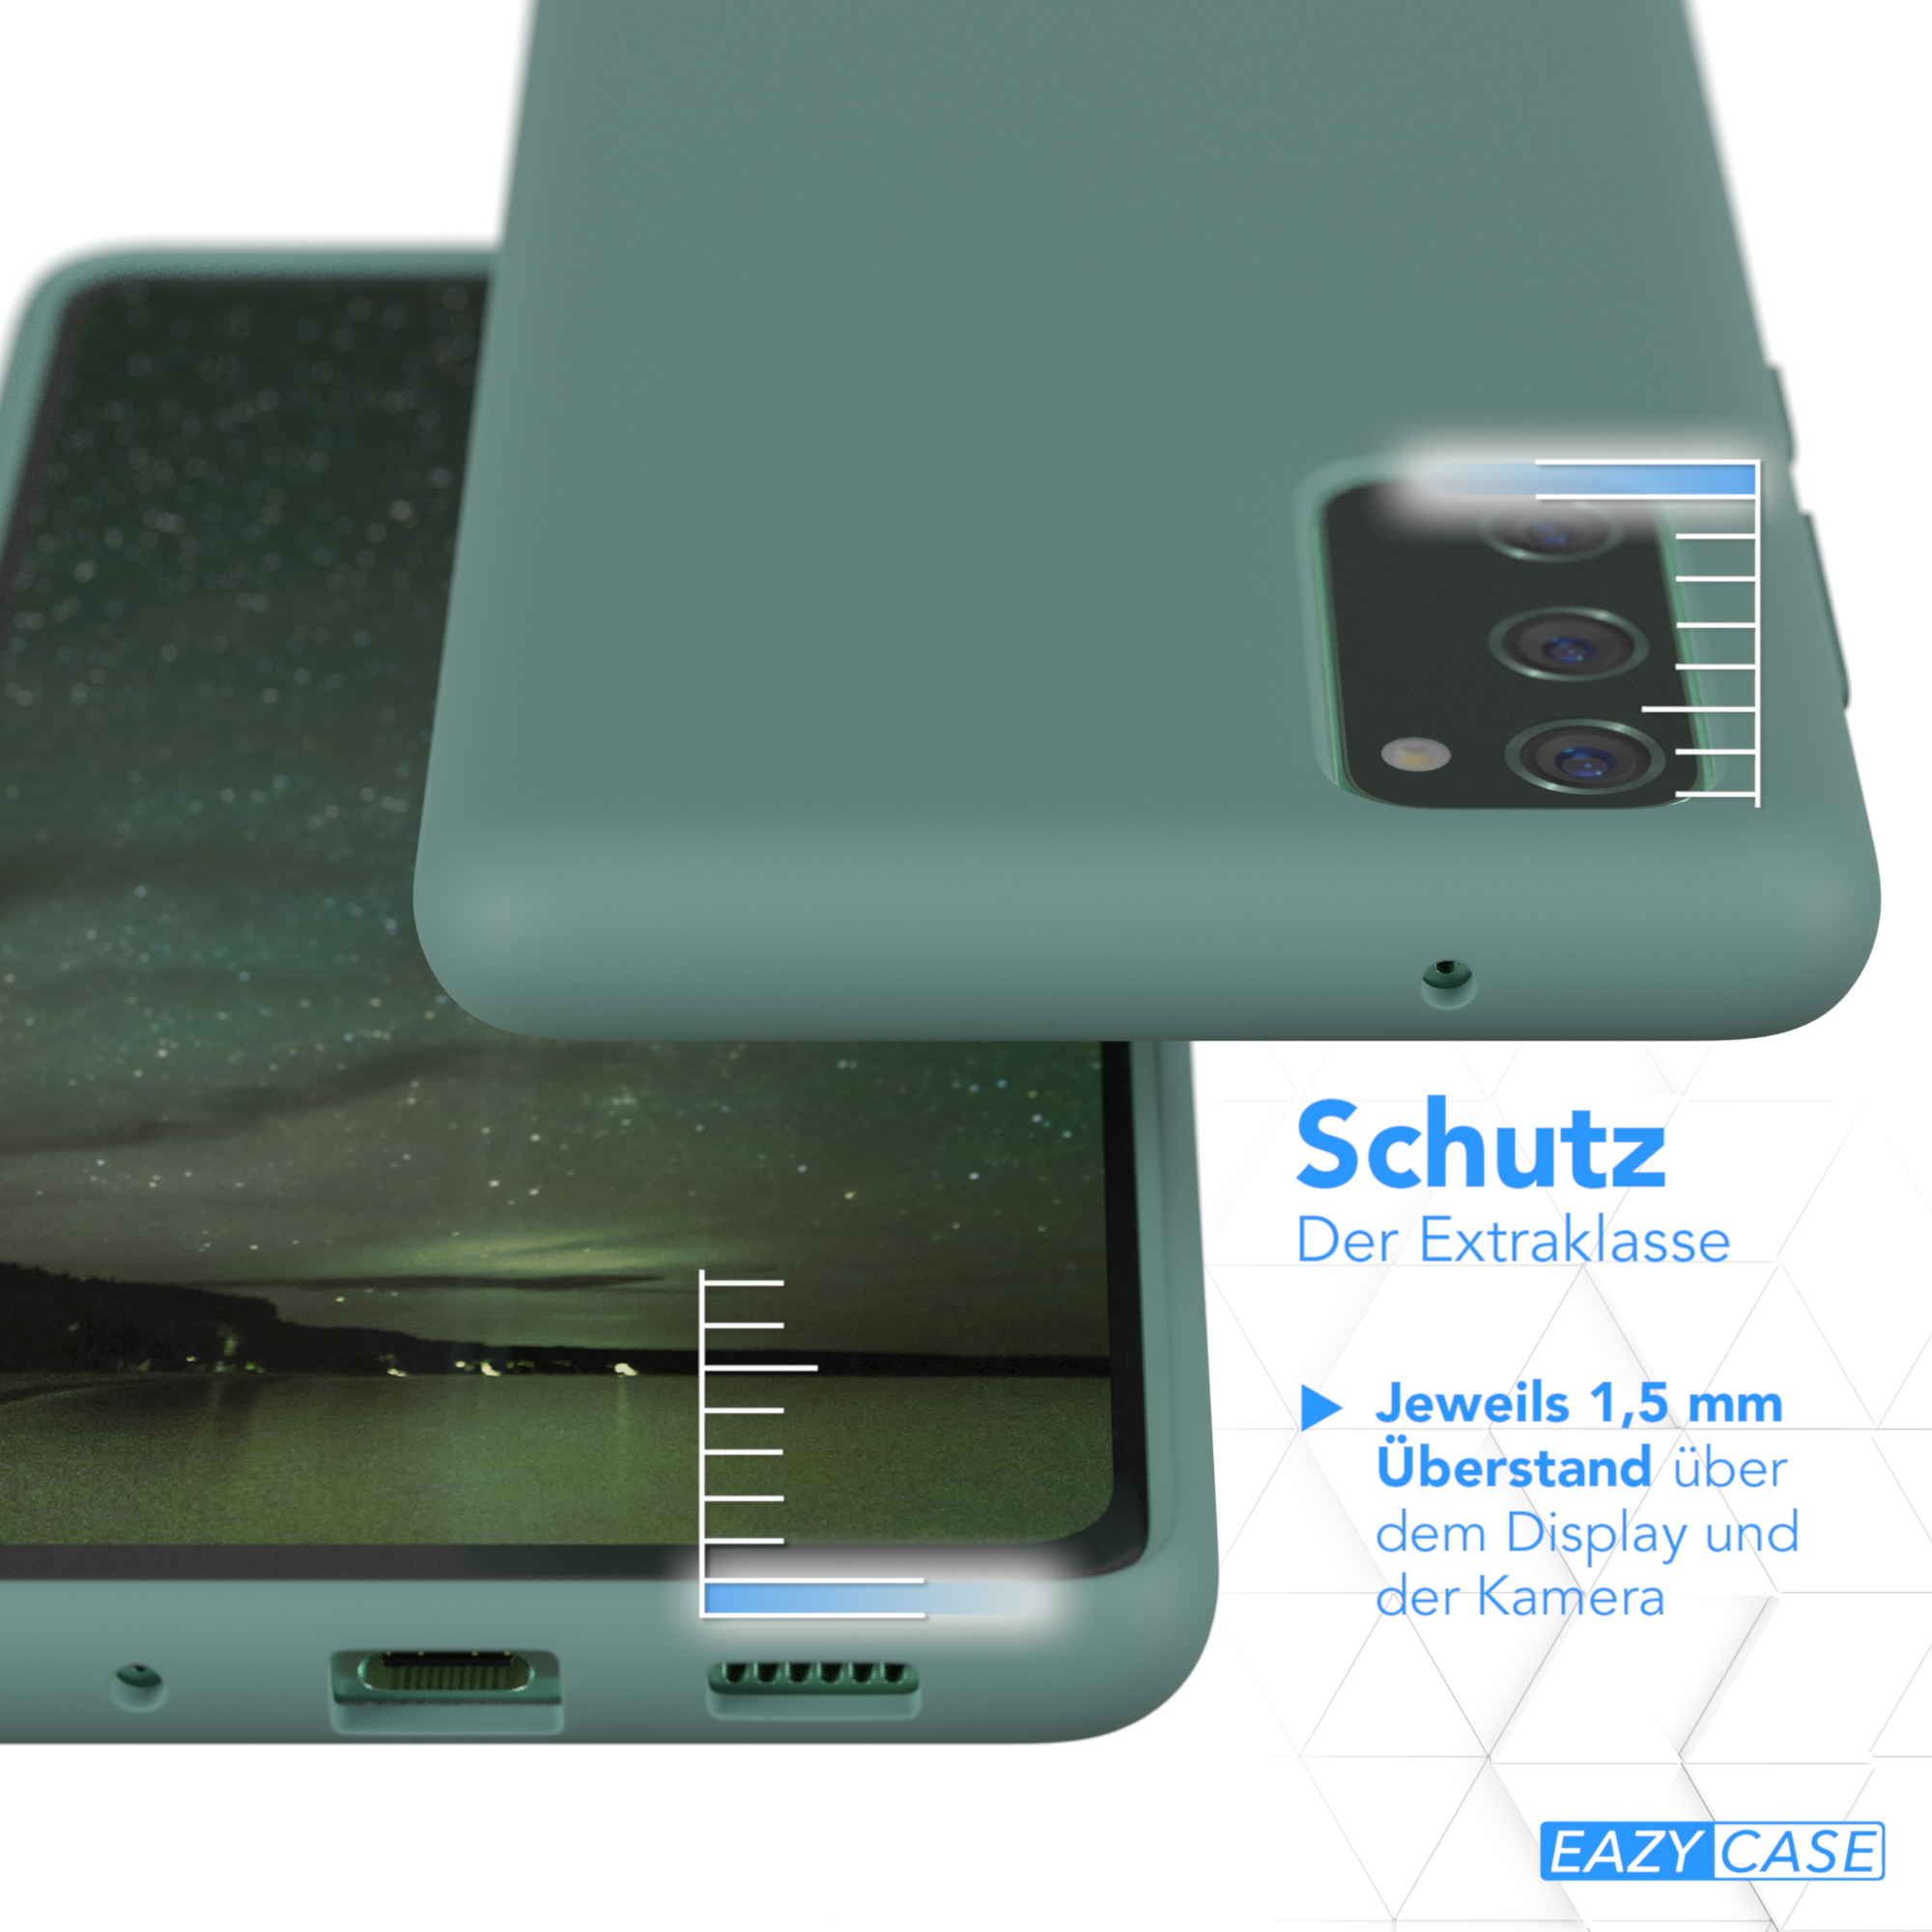 Grün Nachtgrün Handycase, FE Premium CASE / S20 Galaxy Backcover, 5G, Silikon FE / S20 EAZY Samsung,